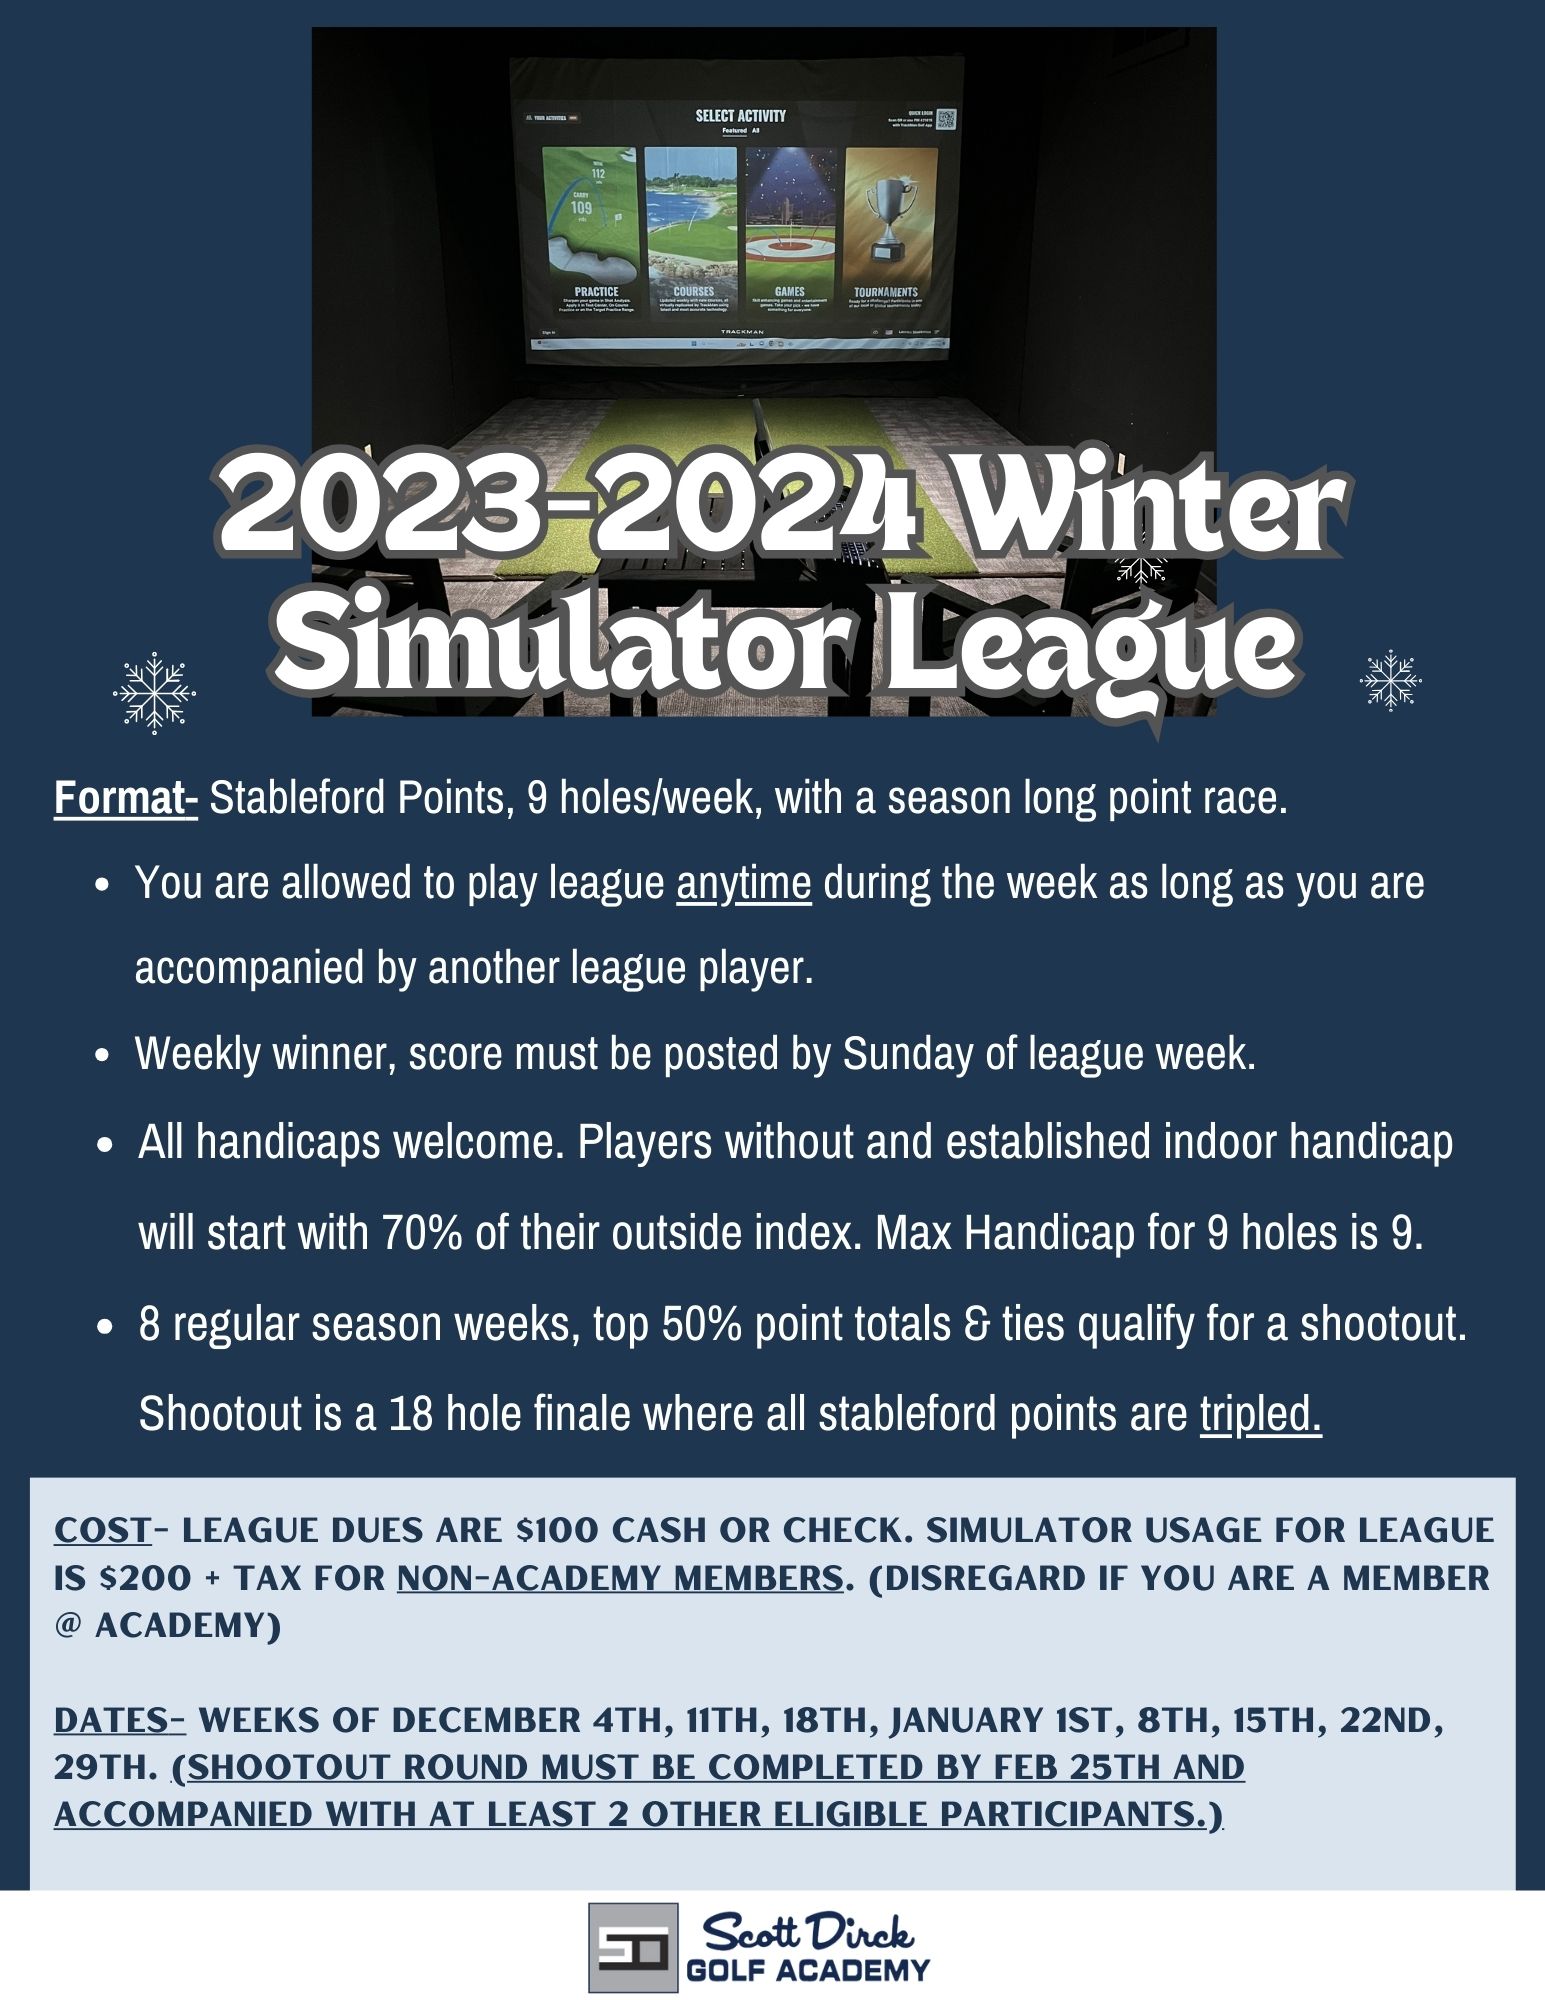 Simulator Leagues